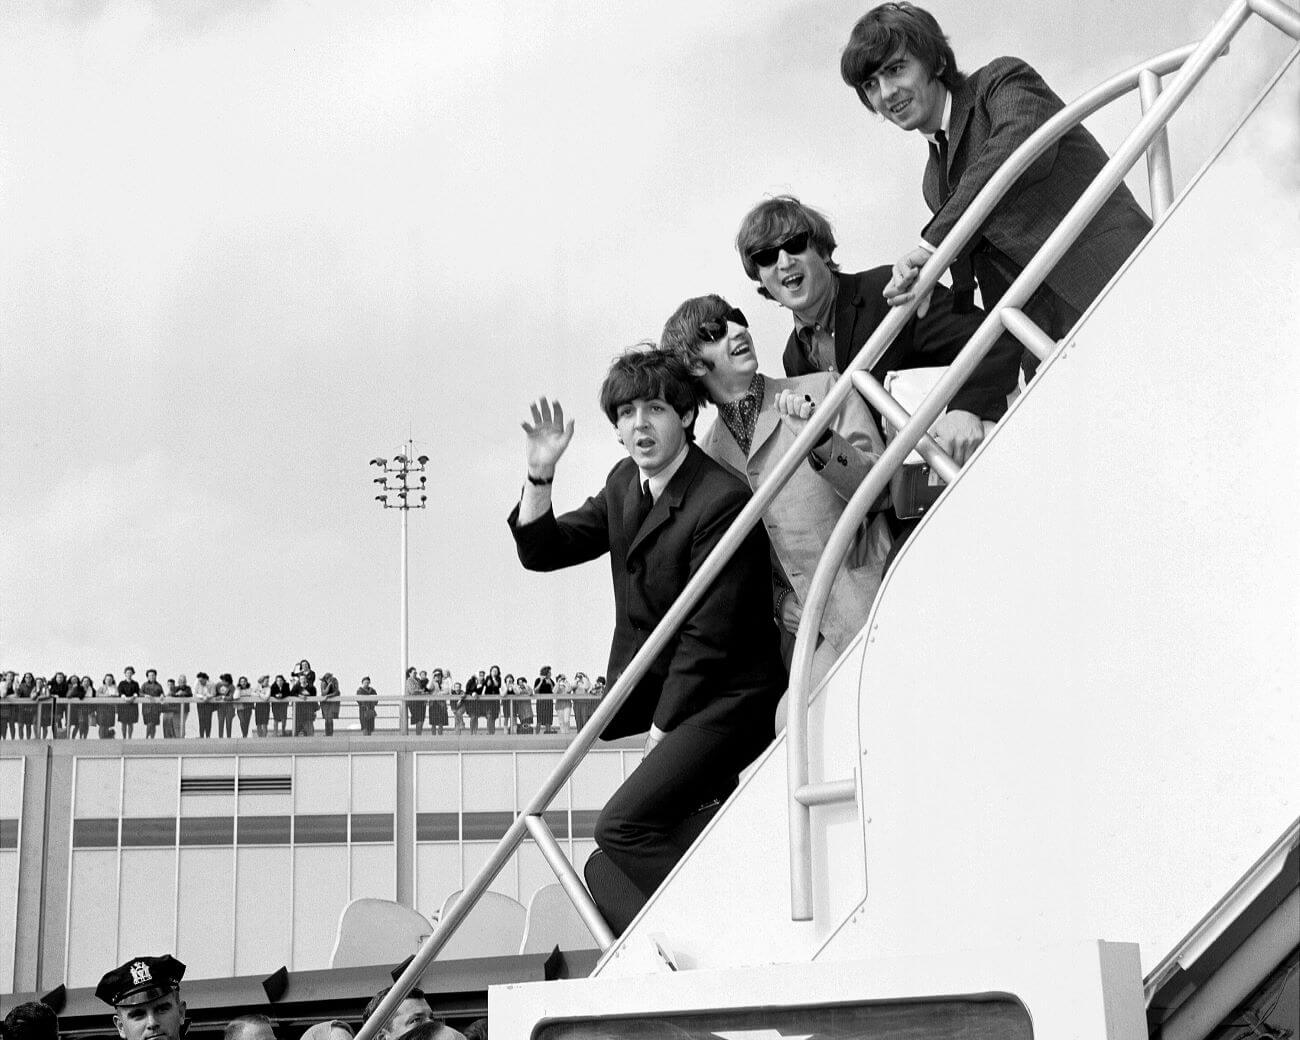 Nach einer Reihe katastrophaler Shows in den USA beschlossen die Beatles, ihre Tournee einzustellen